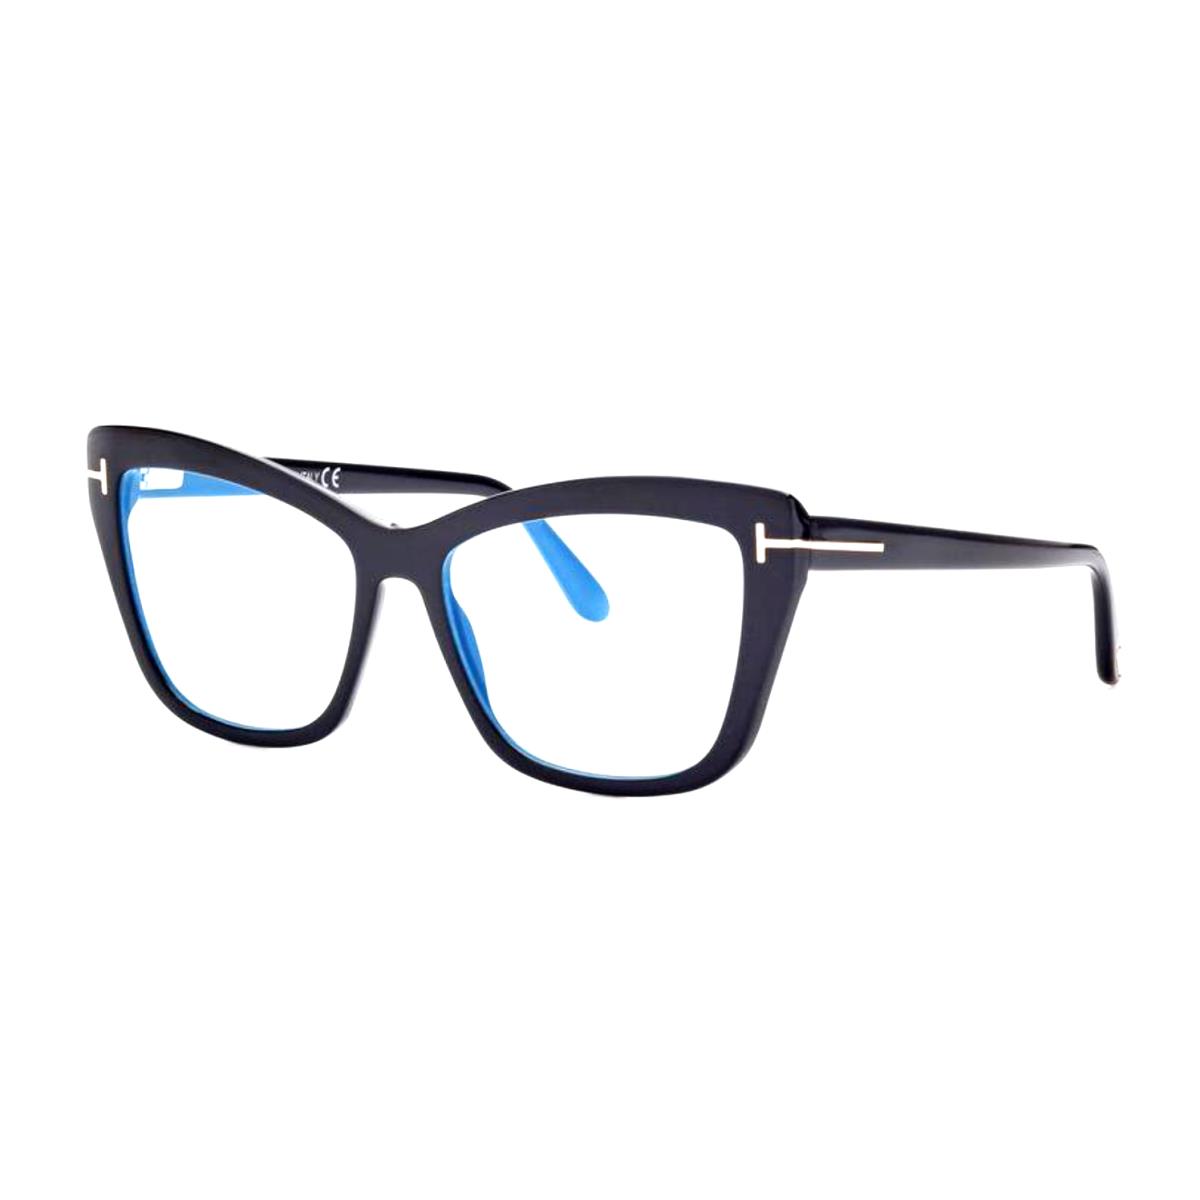 Tom Ford Eyeglasses TF 5826-B Eco 001 55-16 140 Large Black Cat Eye Frames - Frame: Black, Lens: Clear Demo with Blue Light AR Coating